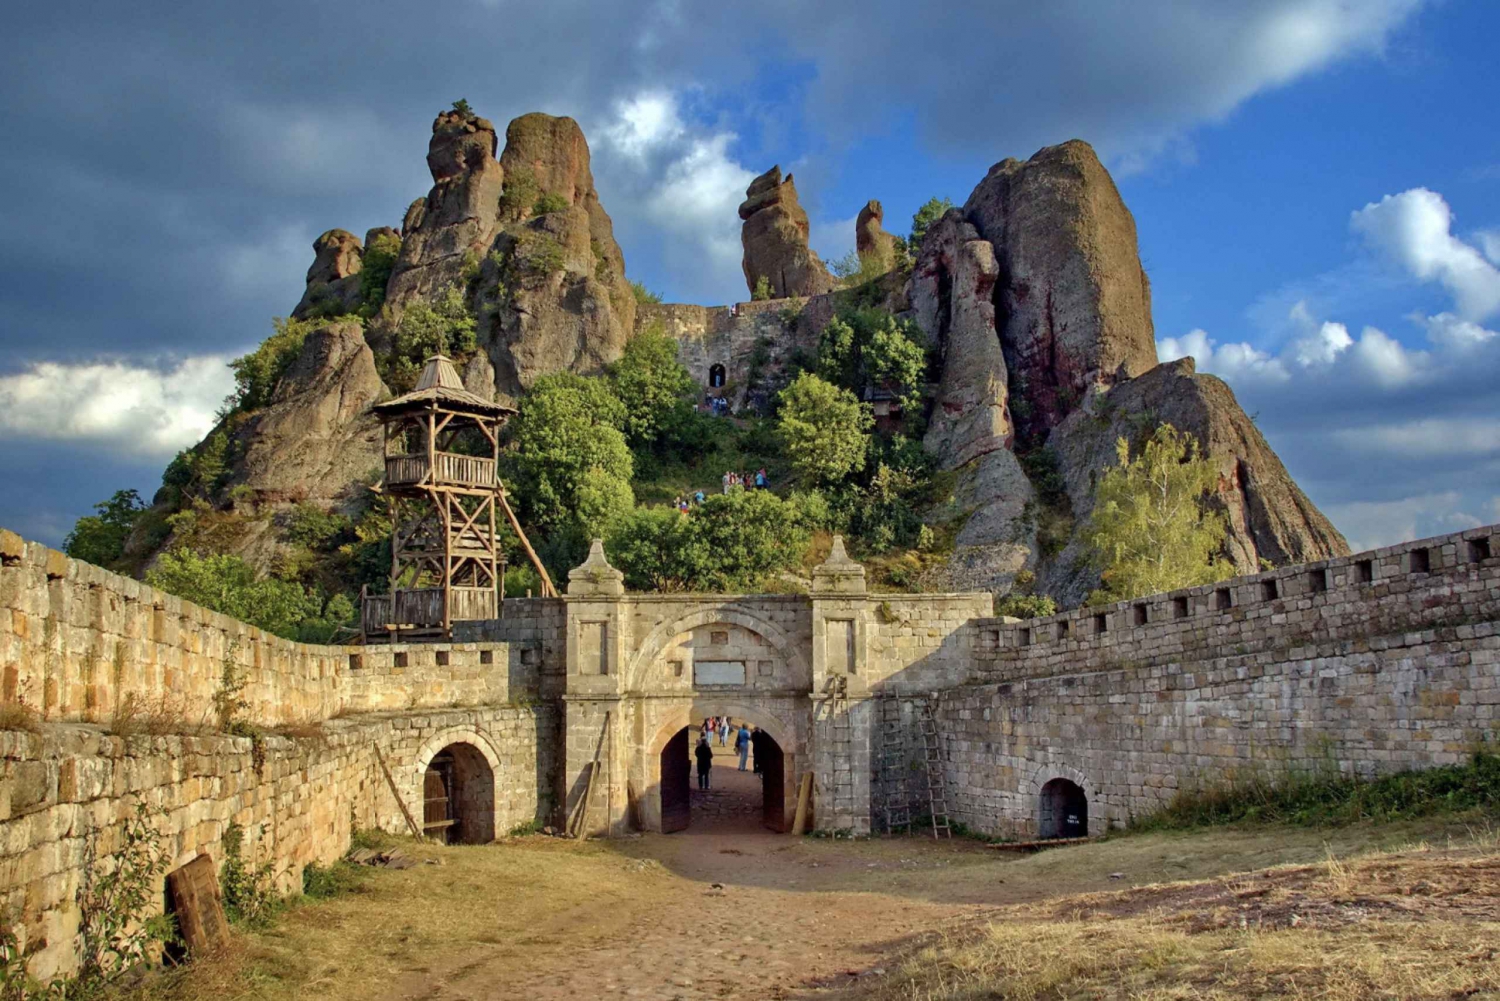 Las Profundidades de la Cueva de Magura y las Alturas de Belogradchik